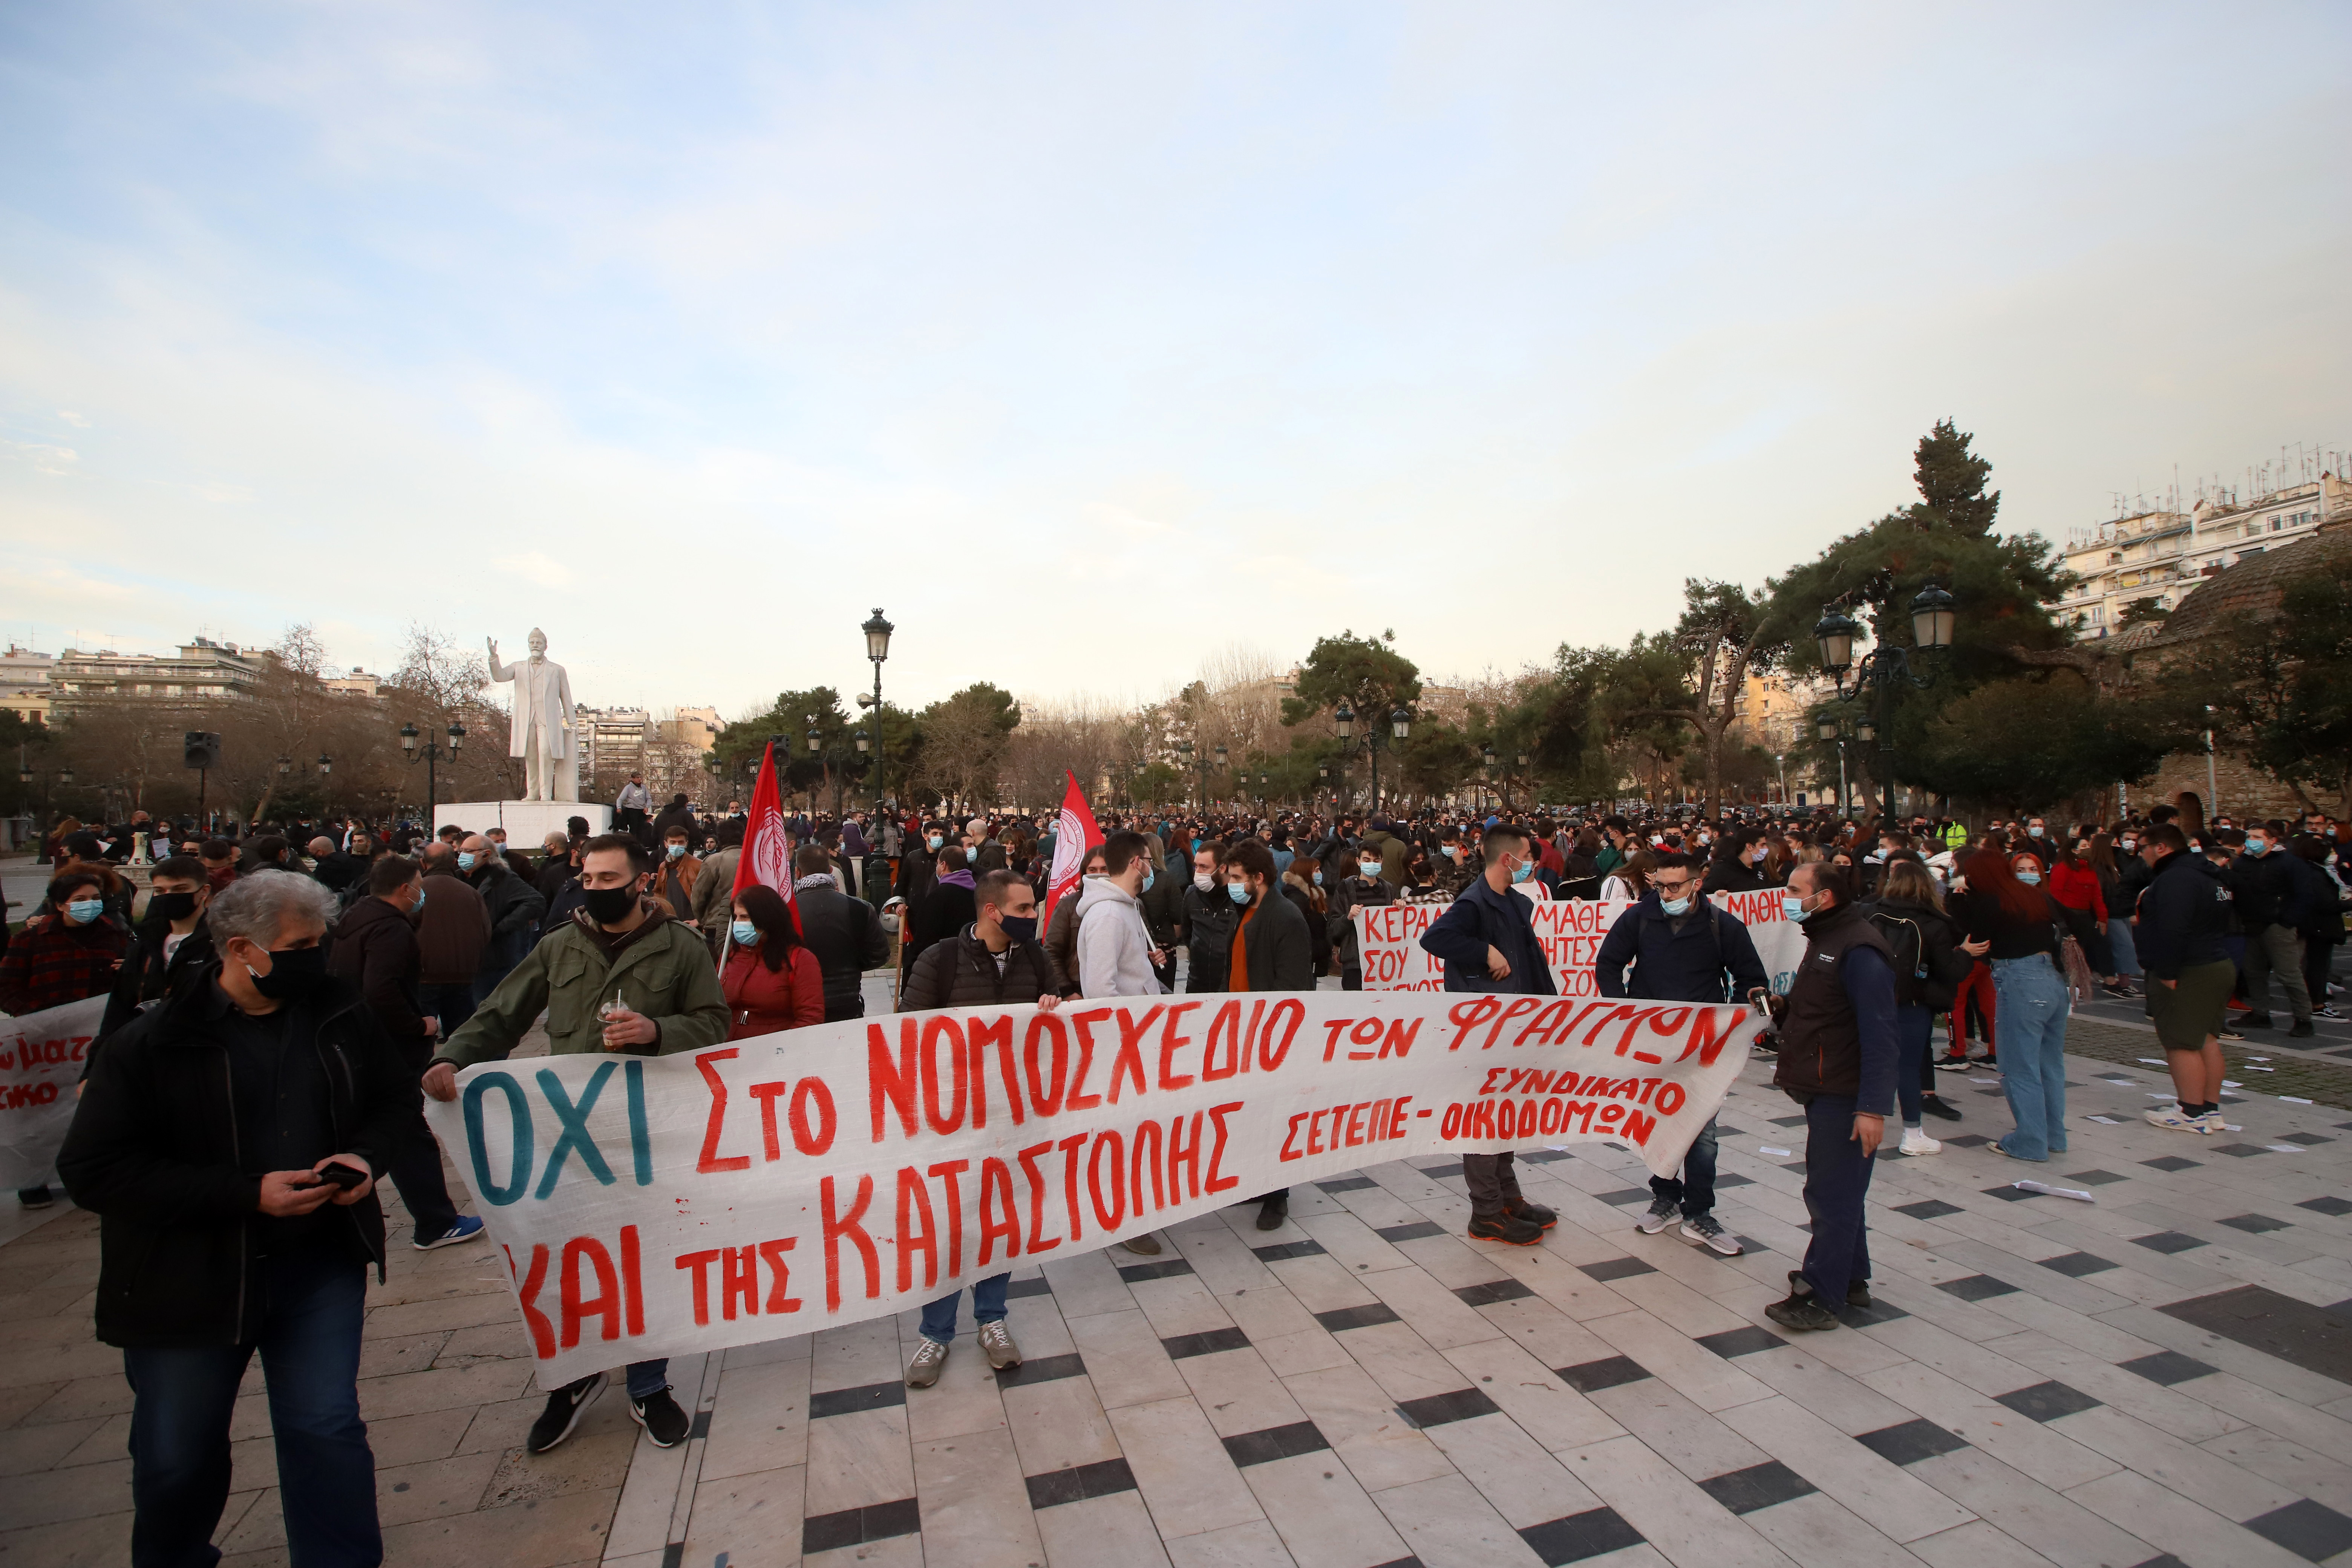 Πανεκπαιδευτικό συλλαλητήριο επεισόδια: Προσαγωγές στην Αθήνα και επιθέσεις με μολότοφ στη Θεσσαλονίκη